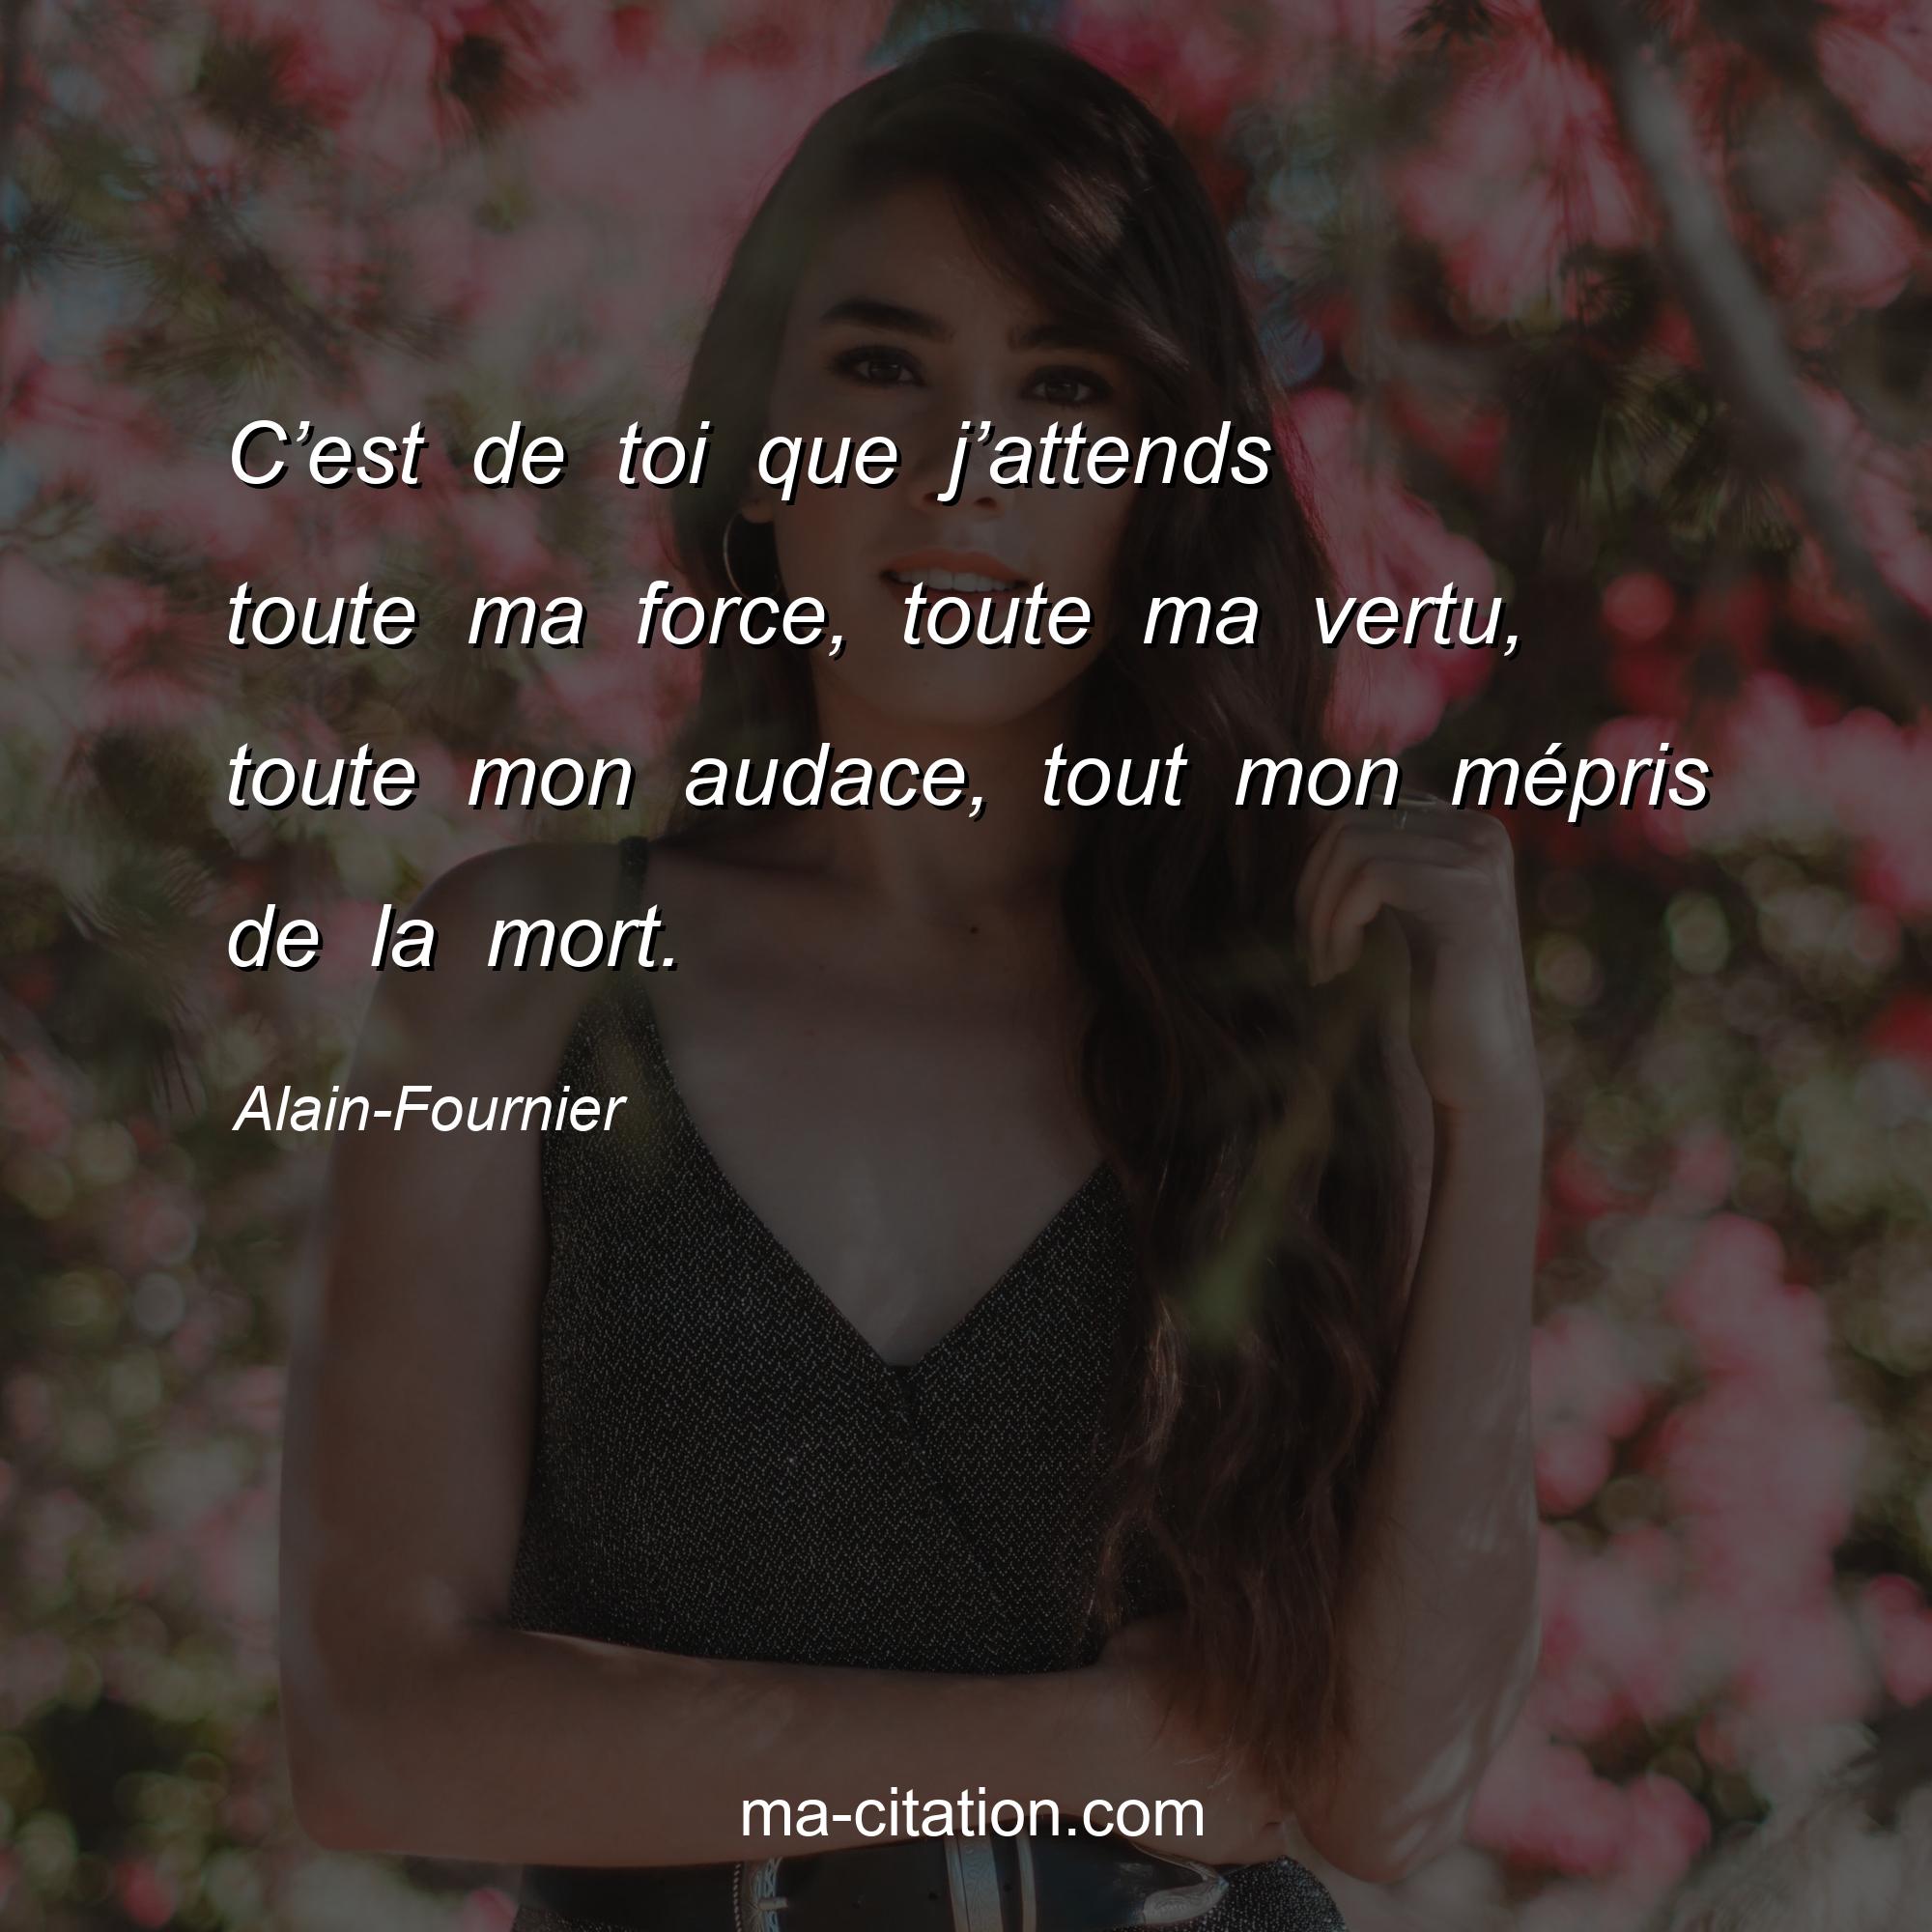 Alain-Fournier : C’est de toi que j’attends toute ma force, toute ma vertu, toute mon audace, tout mon mépris de la mort.